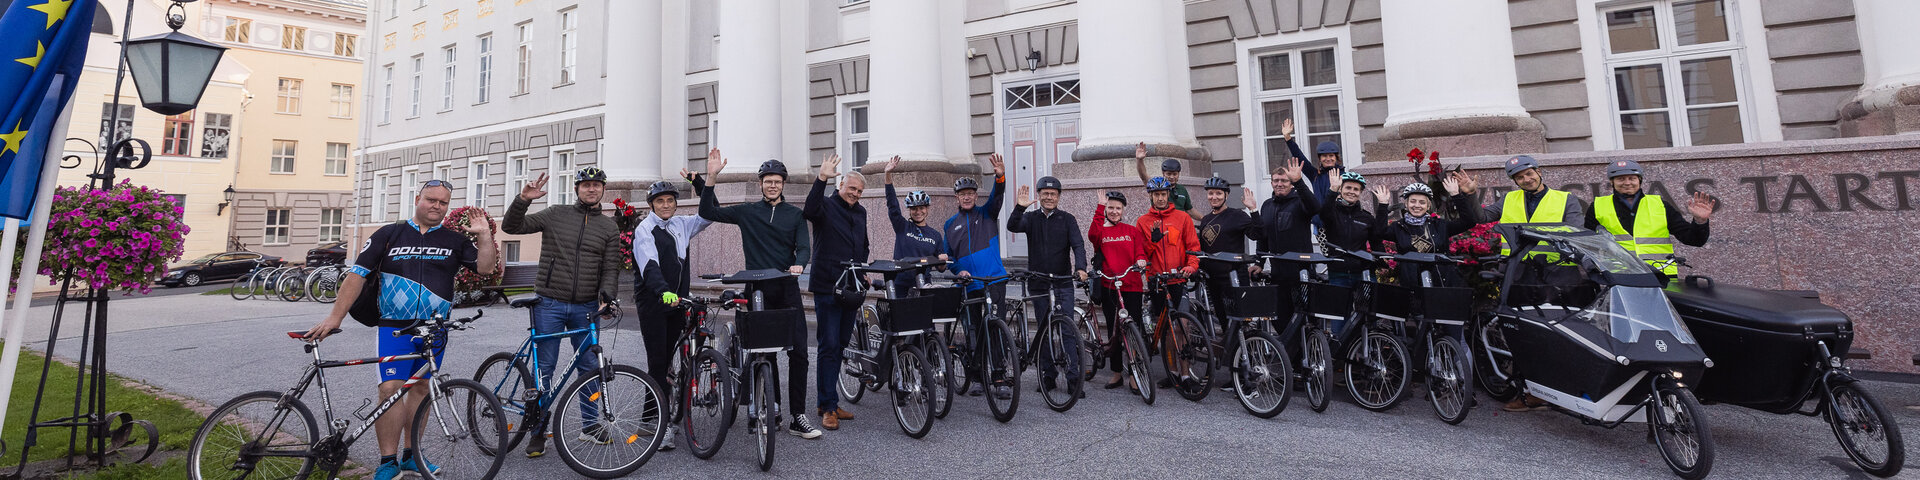 Tartu kõrgkoolide esindajad koos jalgratastega Tartu Ülikooli peahoone ees.